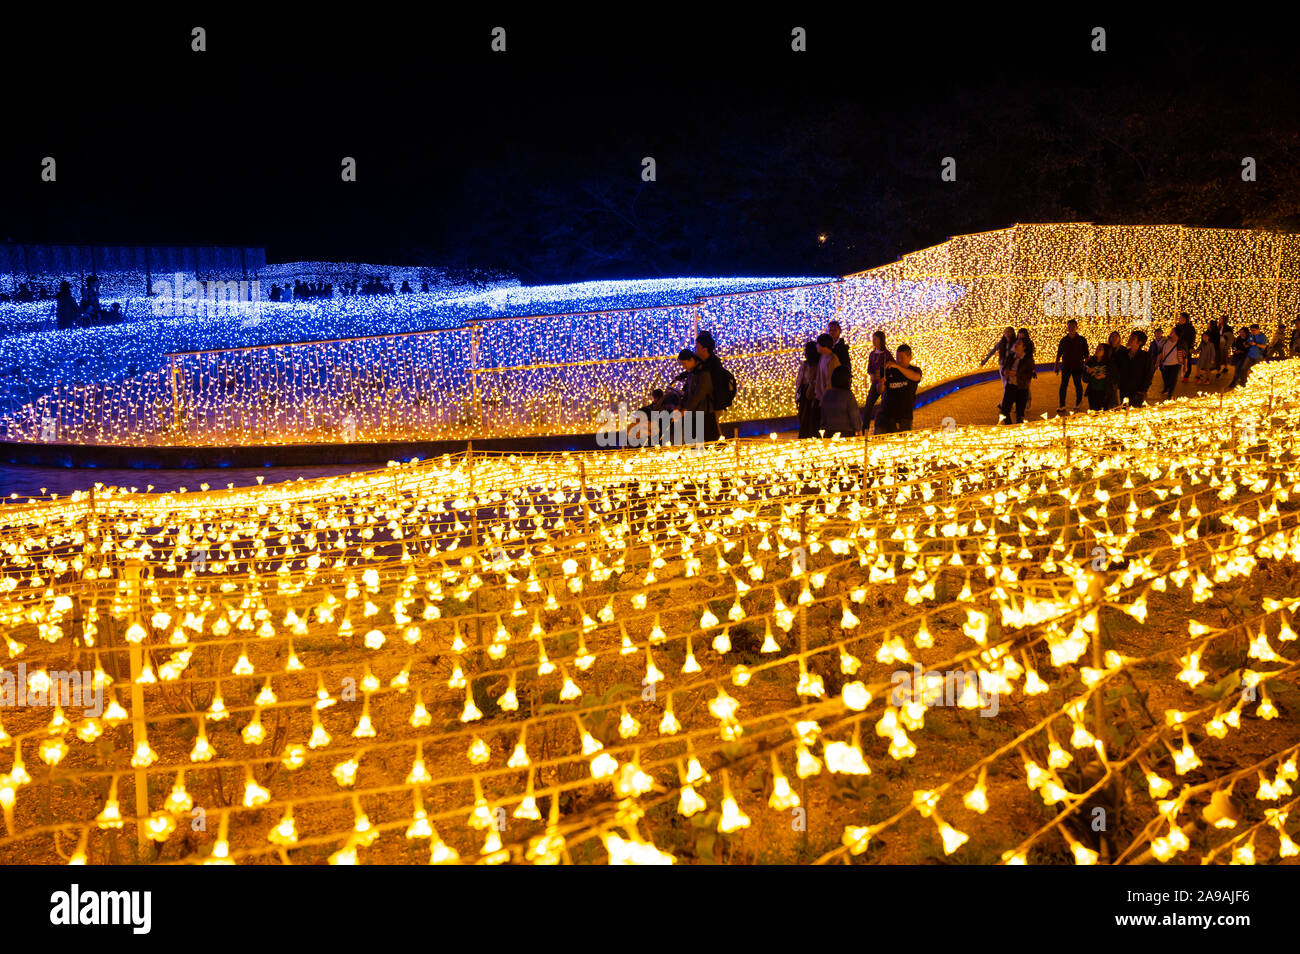 Menschen zu Fuß durch Felder von LED-Leuchten wie Blütenblätter geprägt. Stockfoto